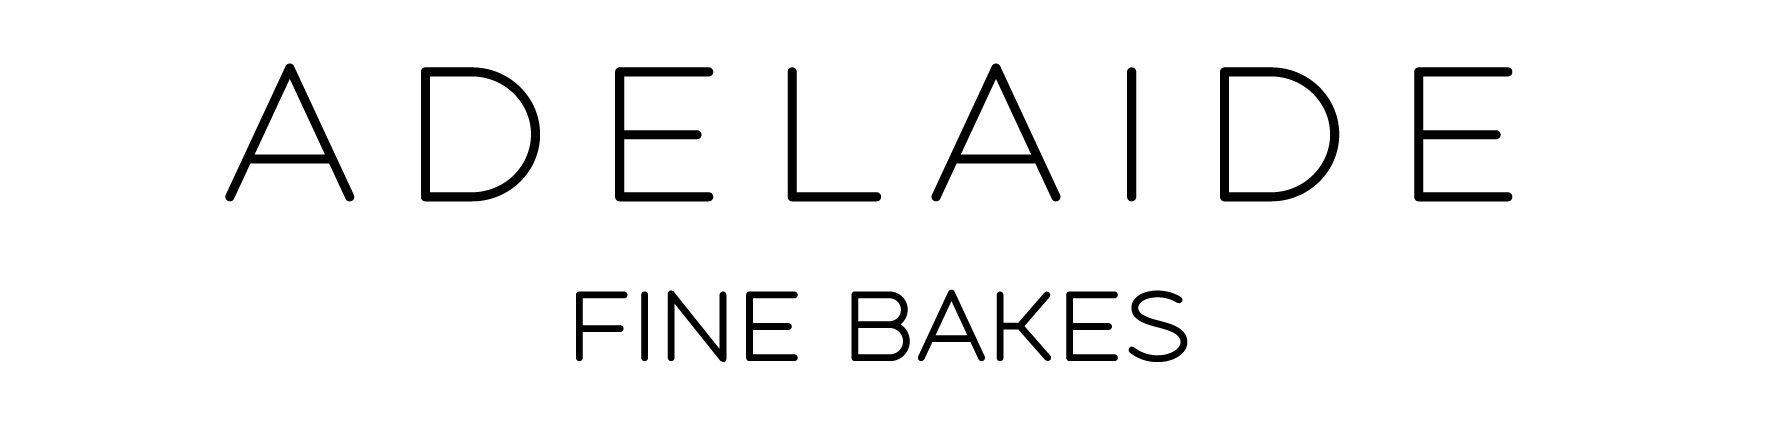 Adelaide Fine Bakes